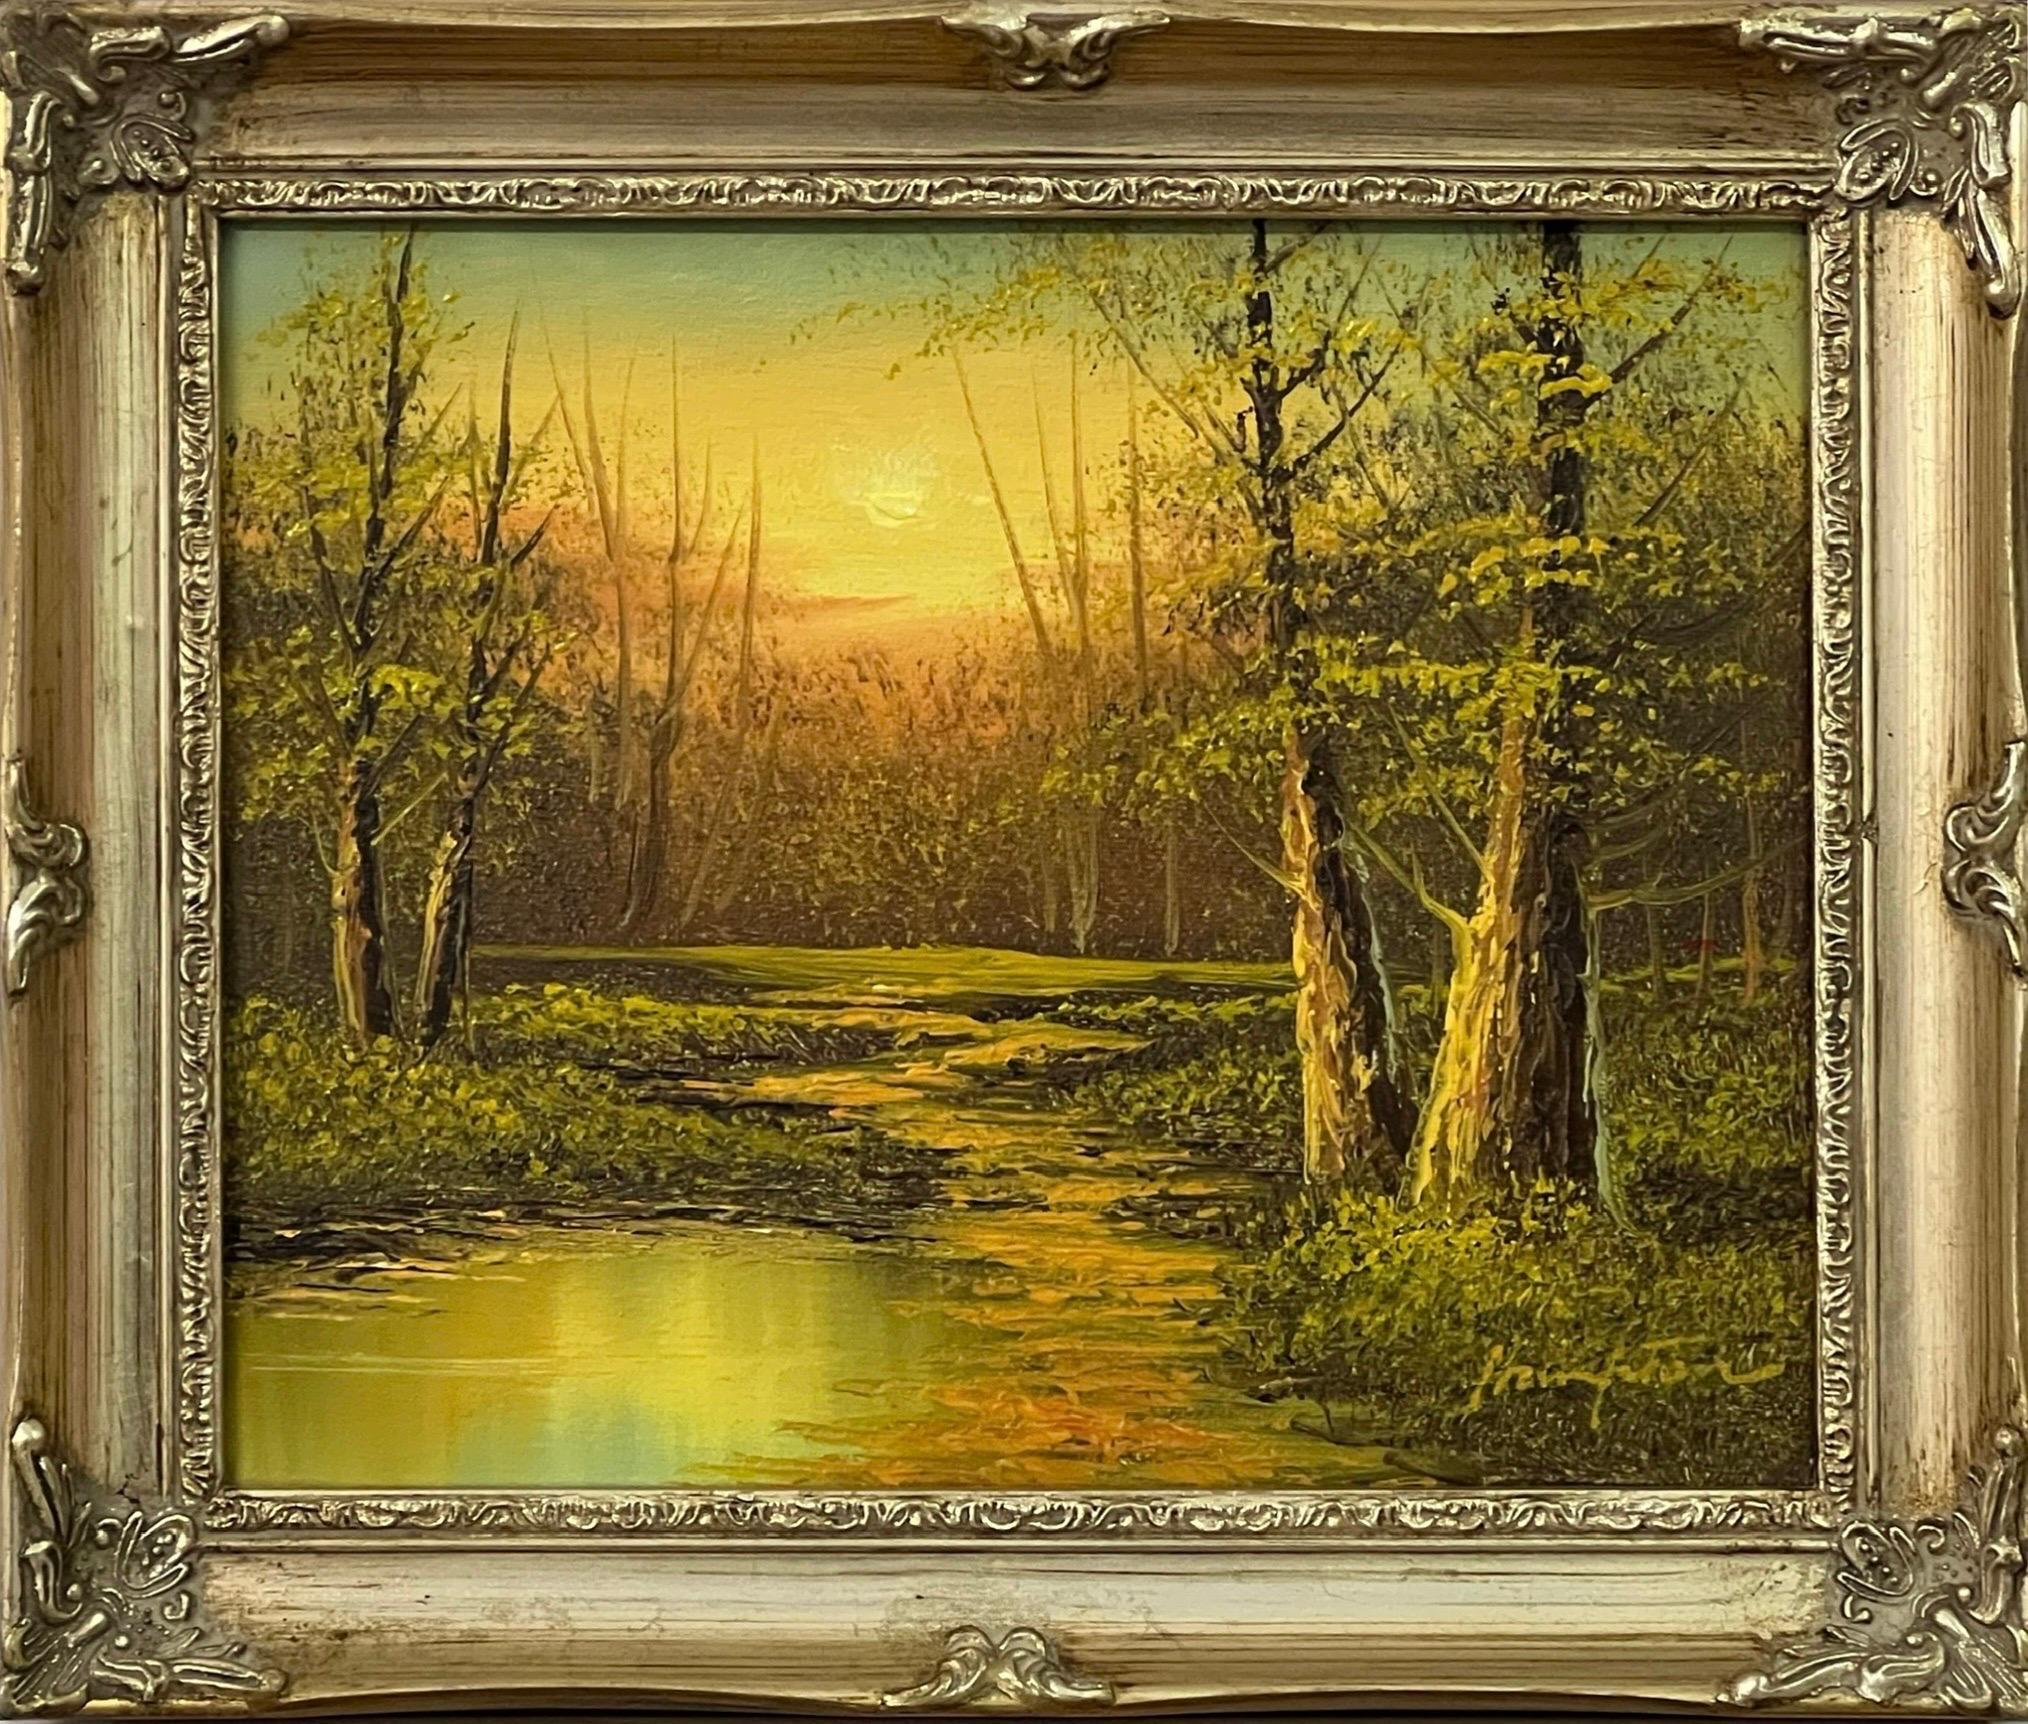 Hampton Figurative Painting – Vintage Ölgemälde von River Sunset in den Wäldern der englischen Landschaft